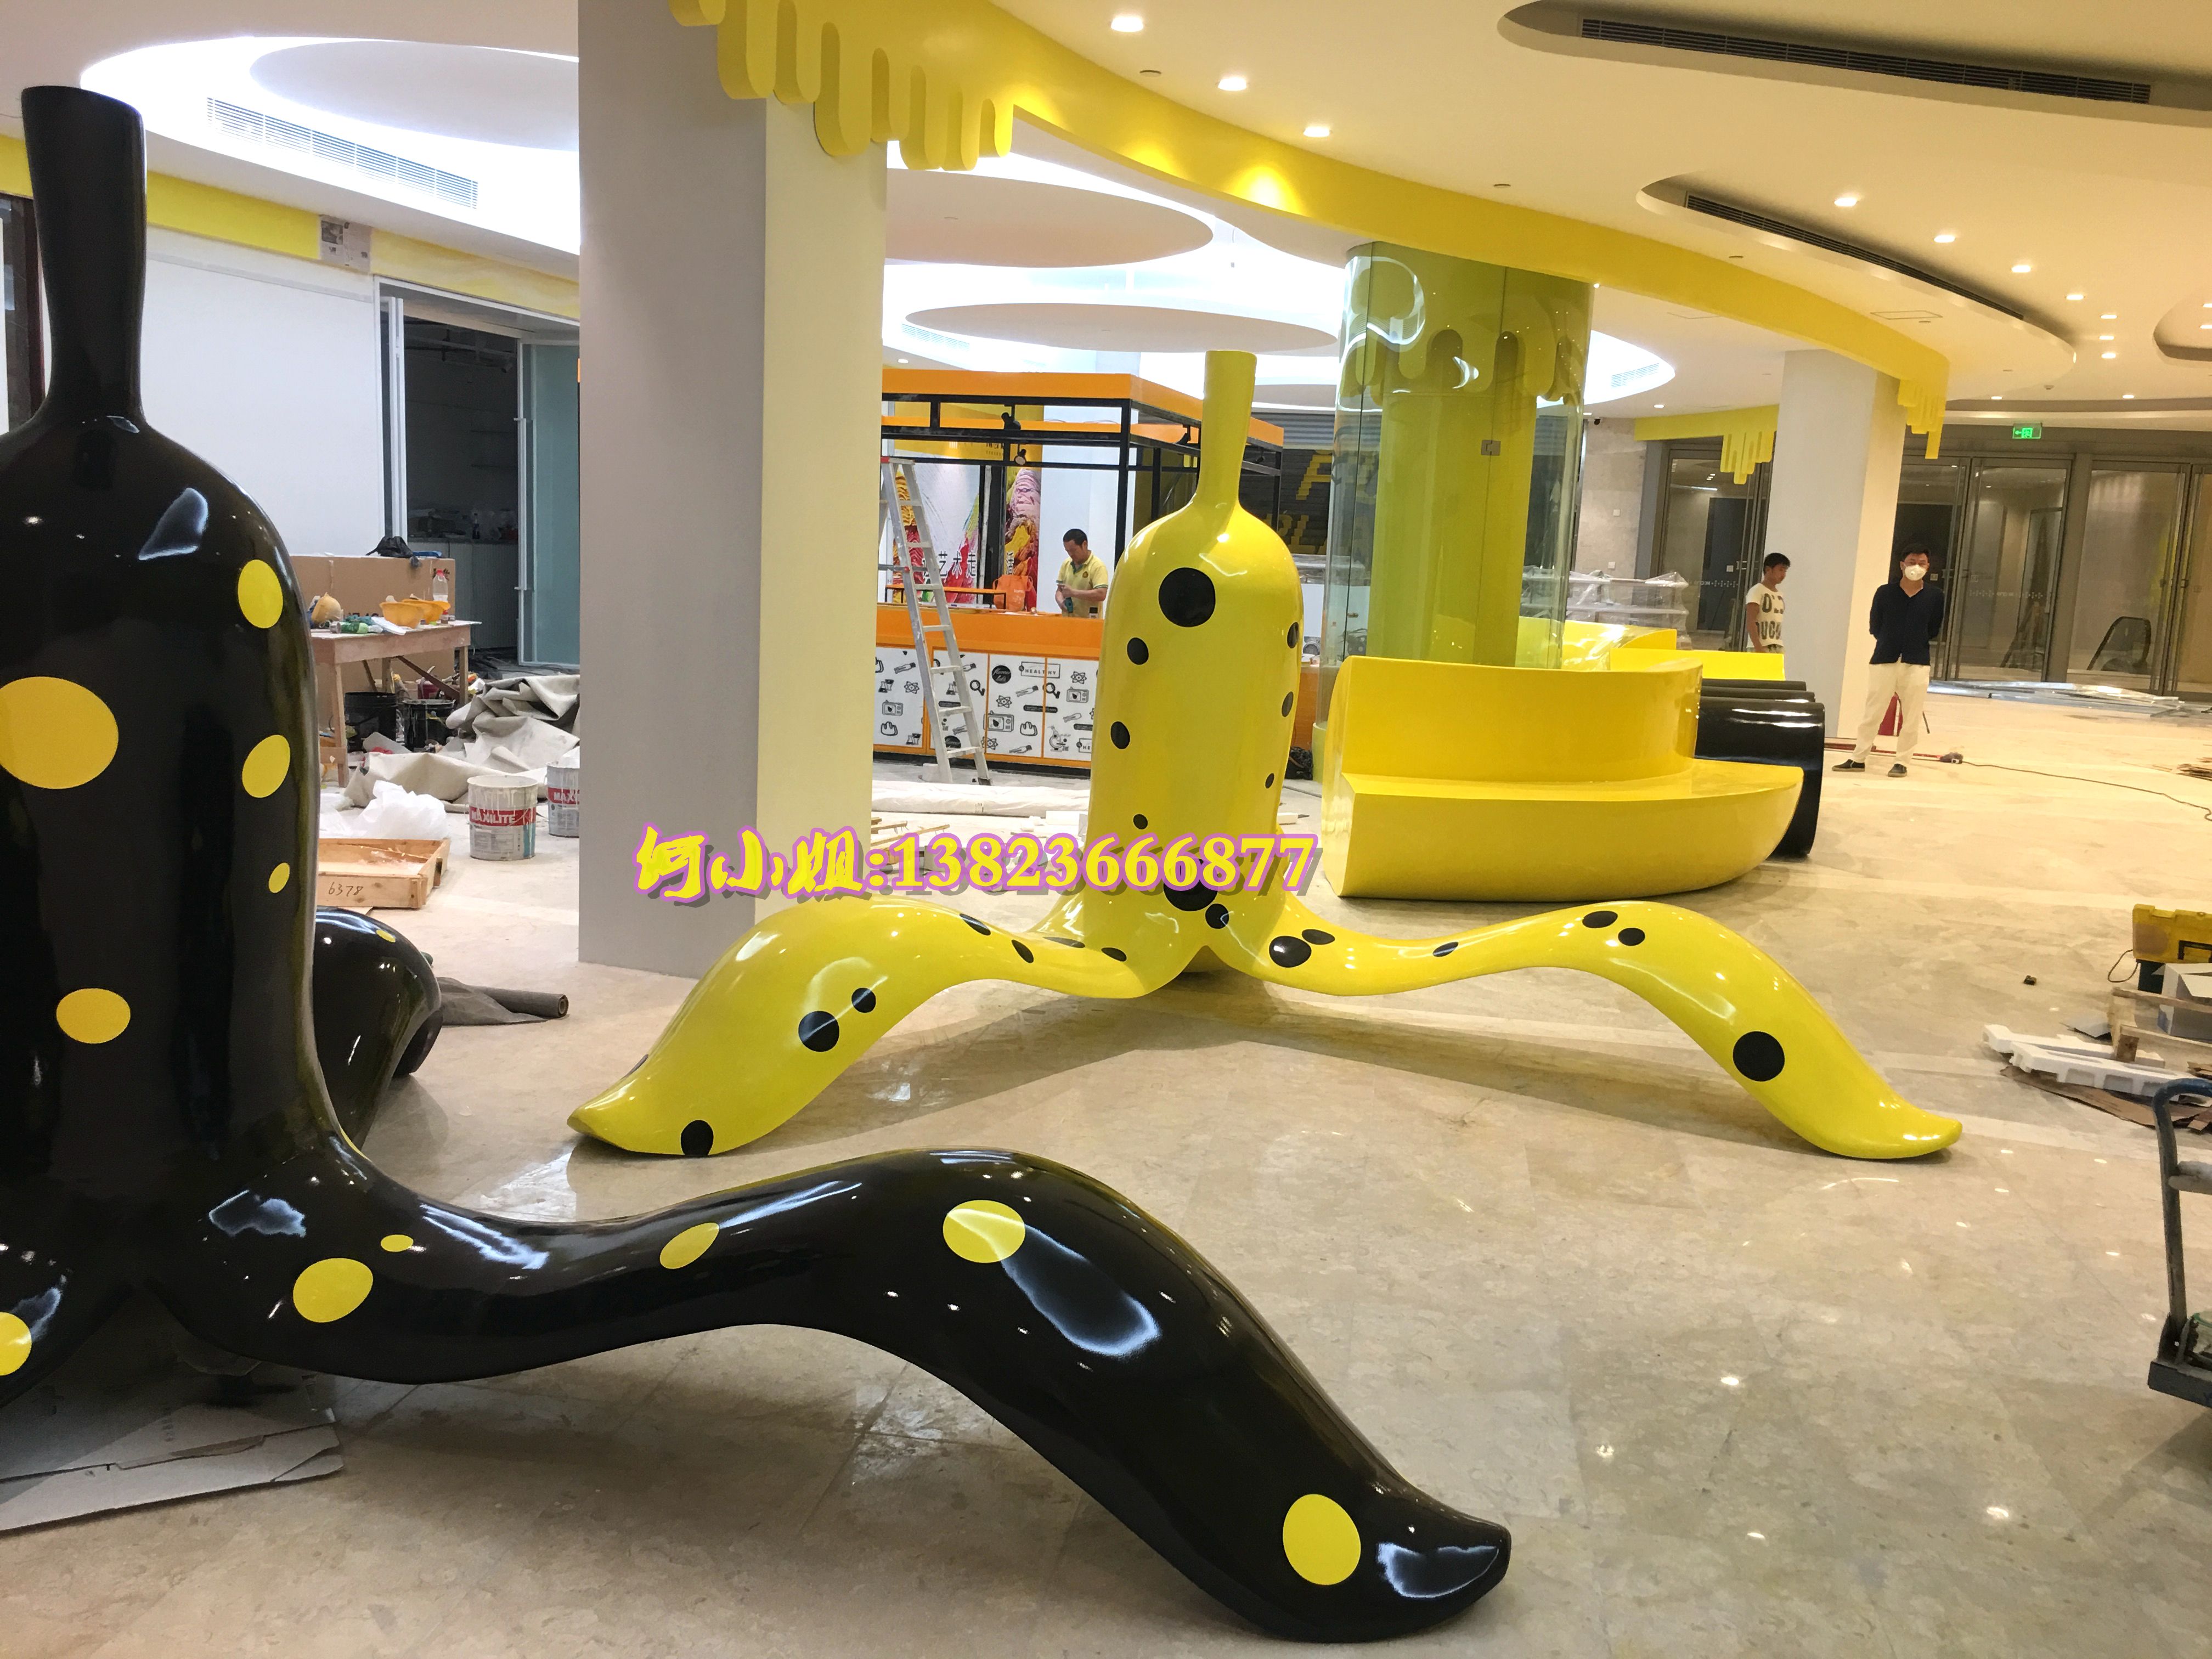 商场购物中心等候休息椅子玻璃钢创意水果香蕉皮休闲座椅美陈装置